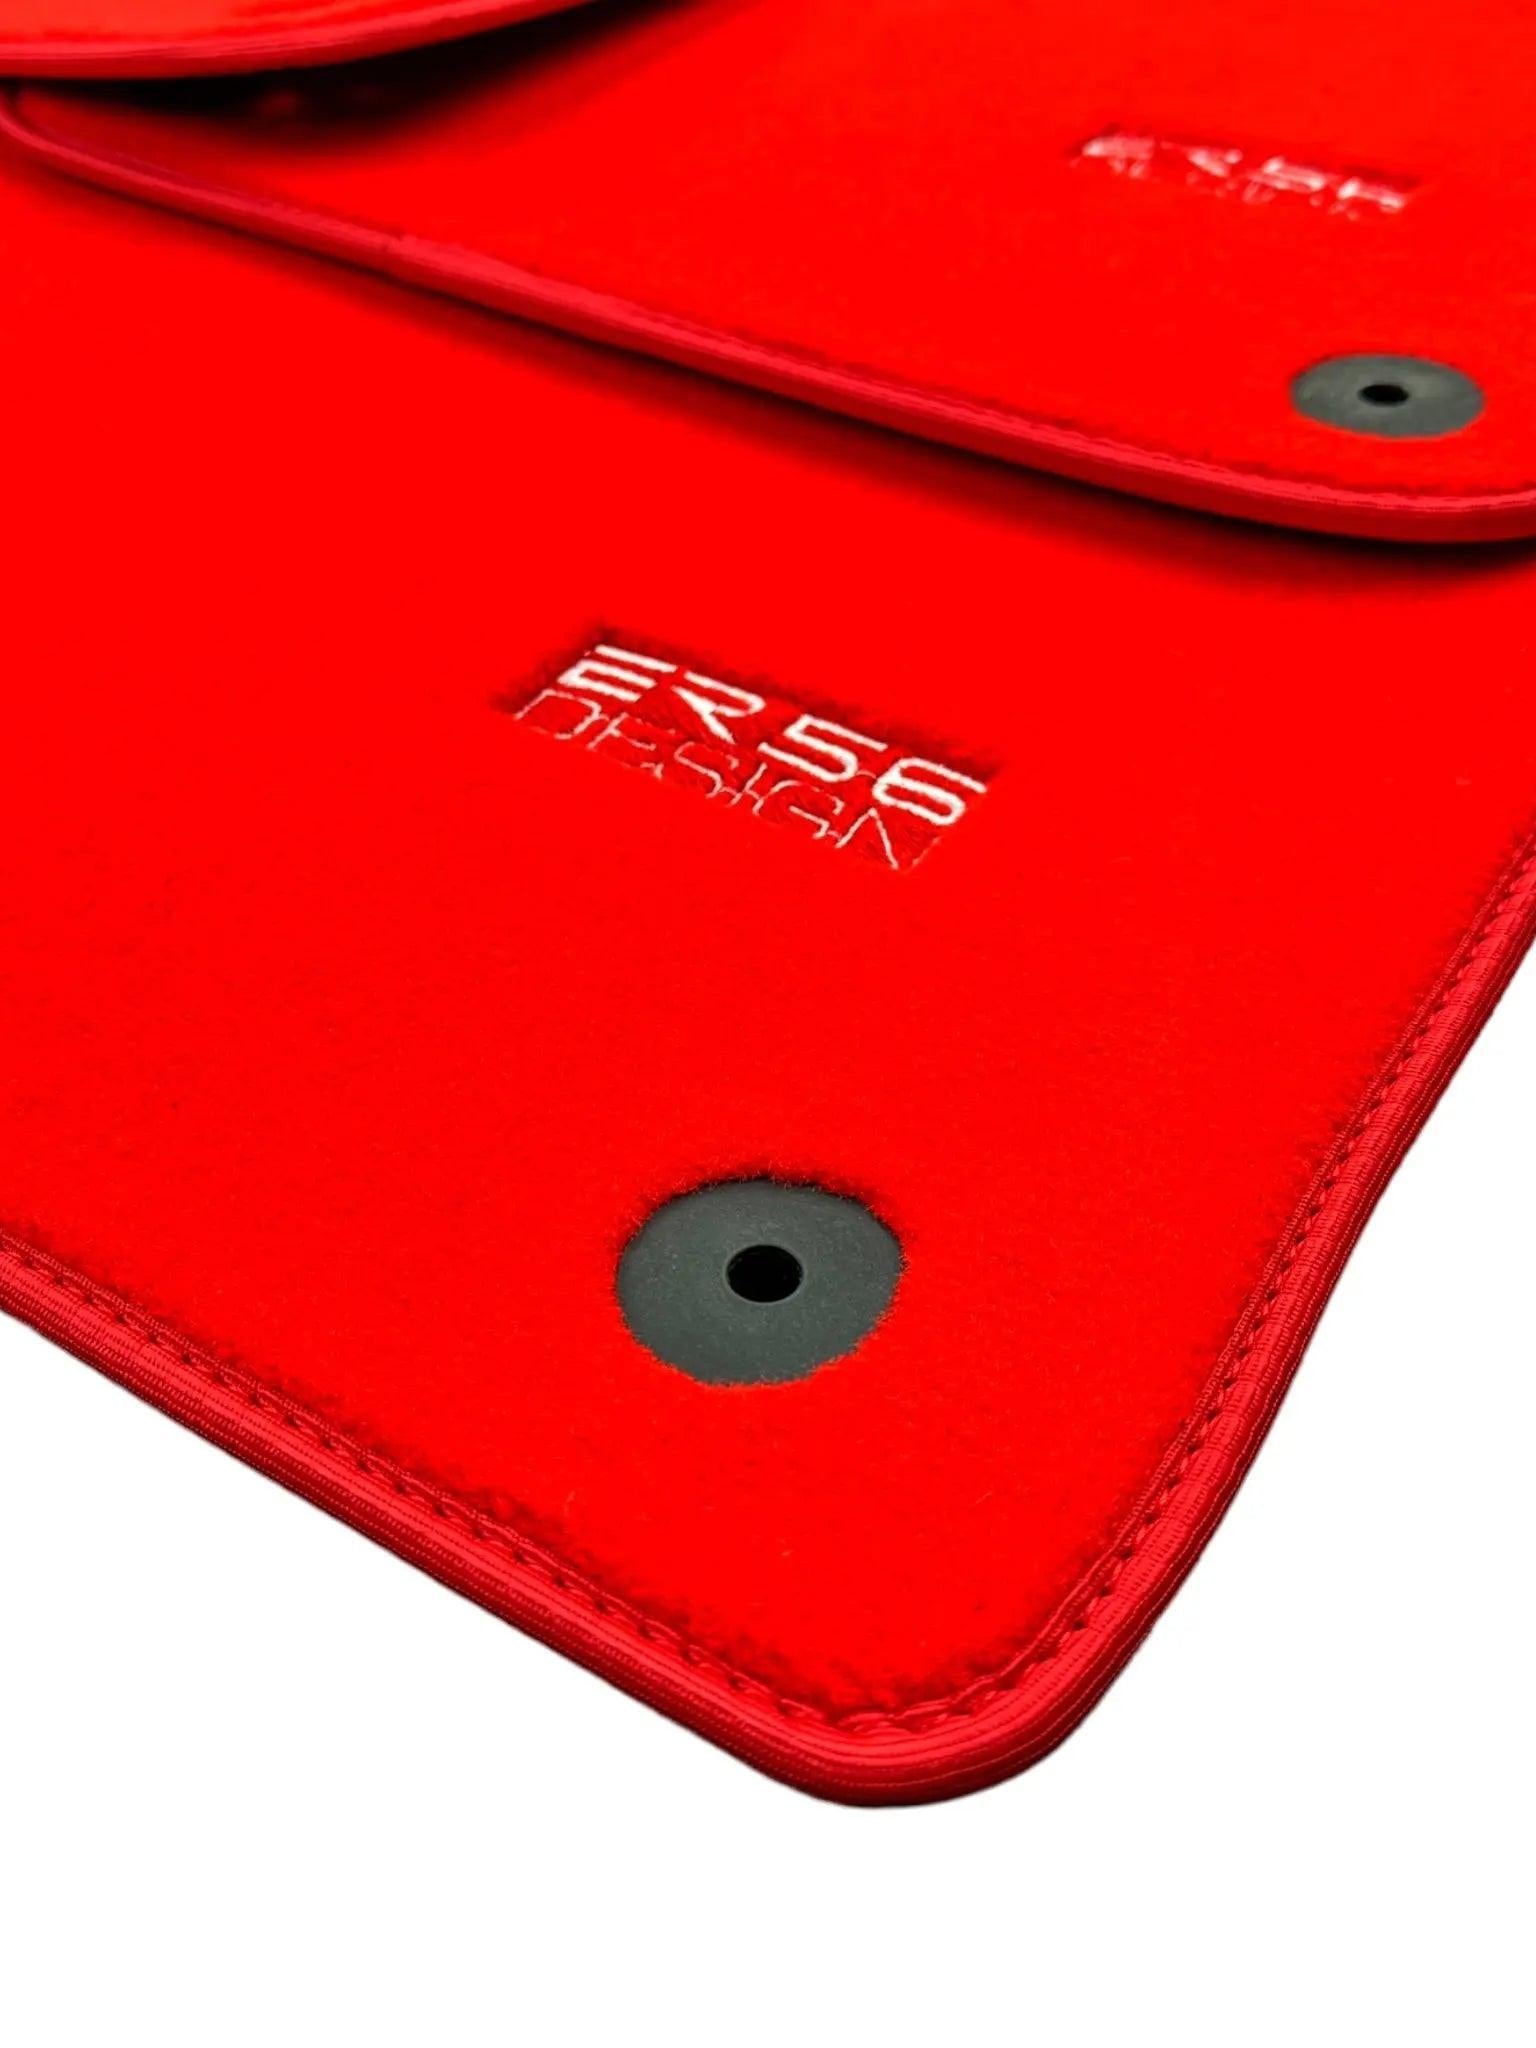 Red Floor Mats for Audi A3 - 3-door Hatchback (2013-2020) | ER56 Design